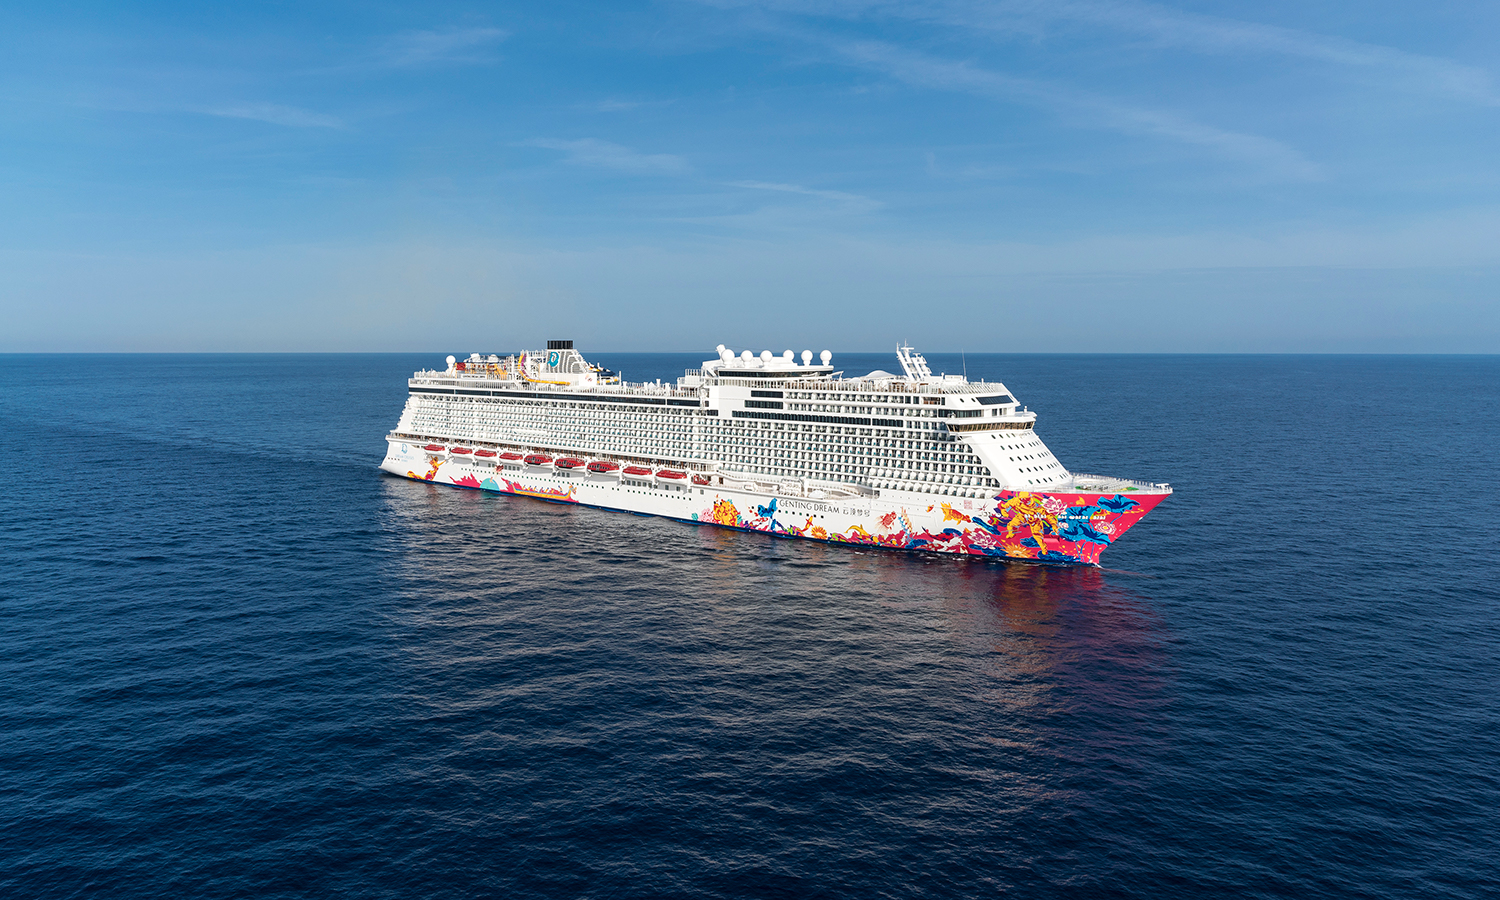 Dream Cruises’ Genting Dream